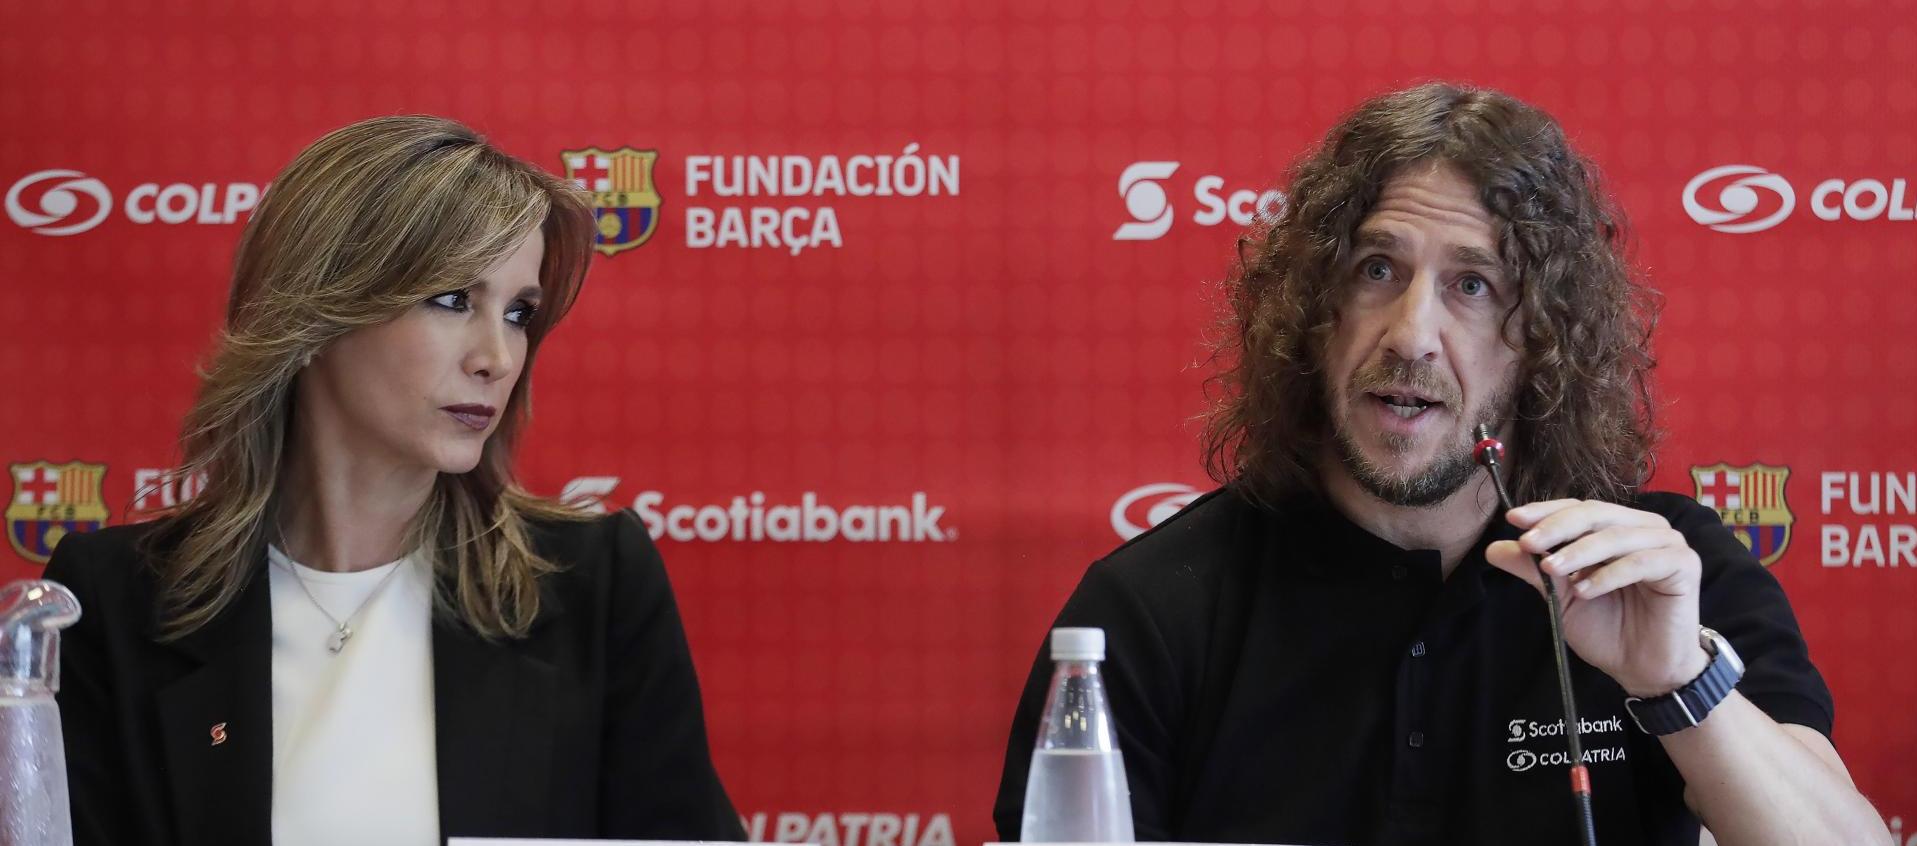 Gerente de Scotiabank, María Ruíz, y el exfutbolista Carles Puyol.